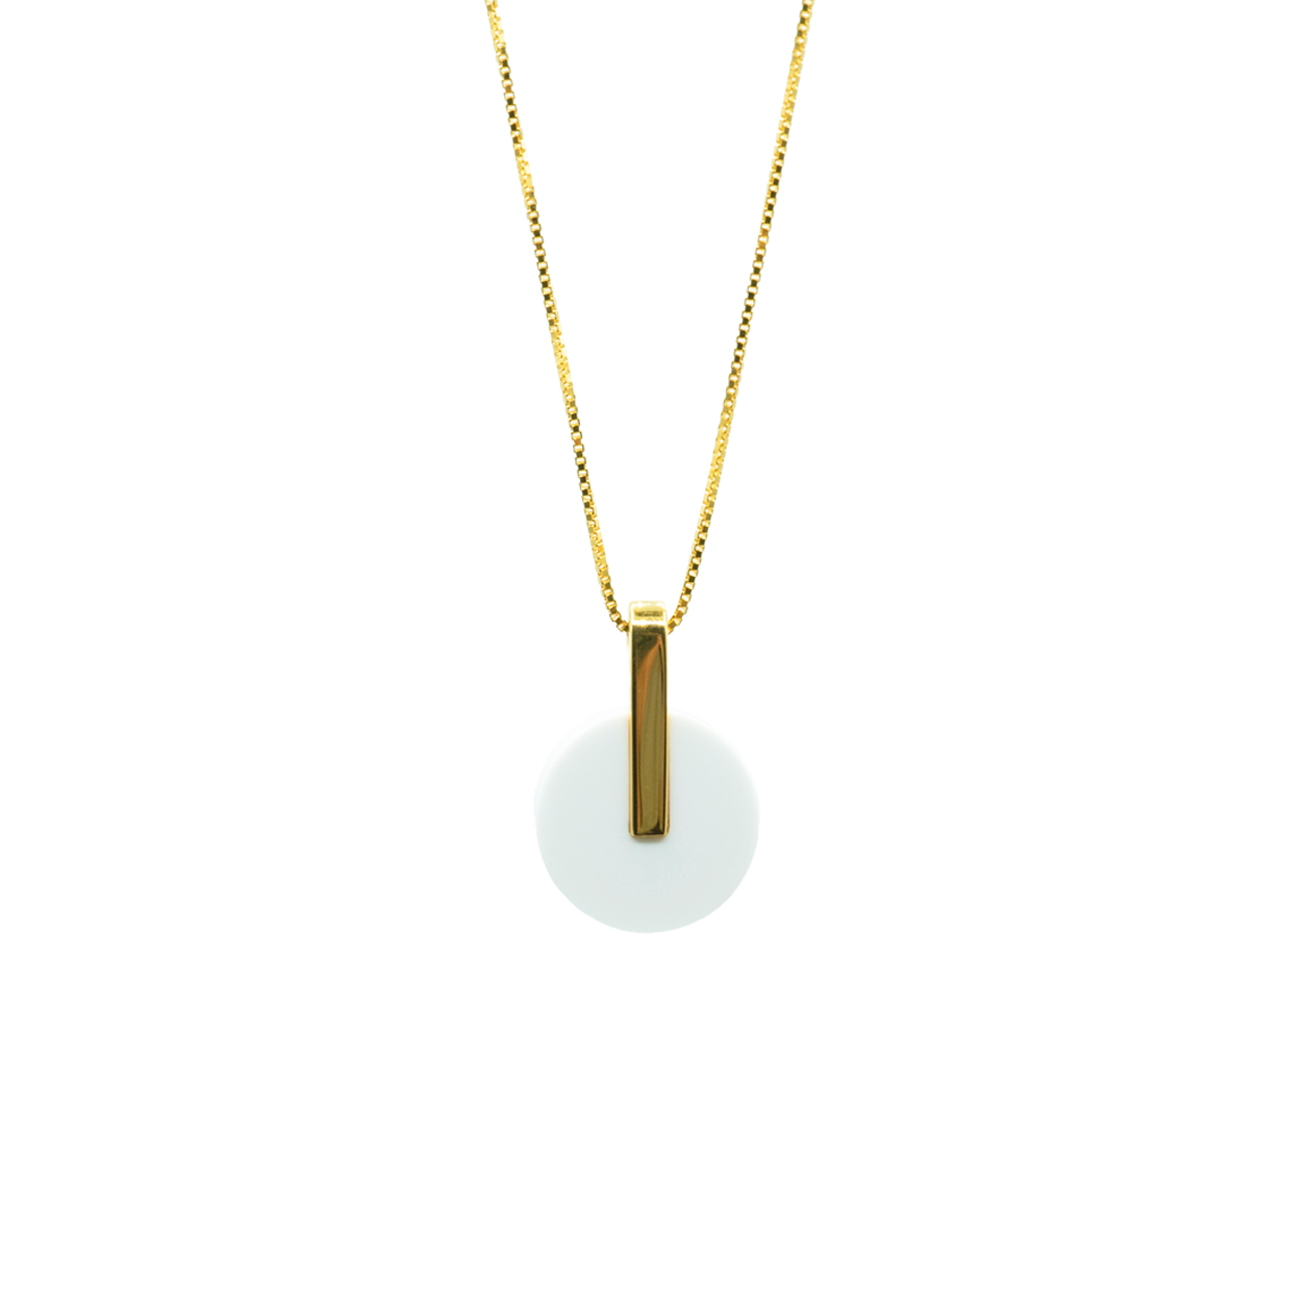 metaformi_design_jewelry_adamantine_necklace_agate